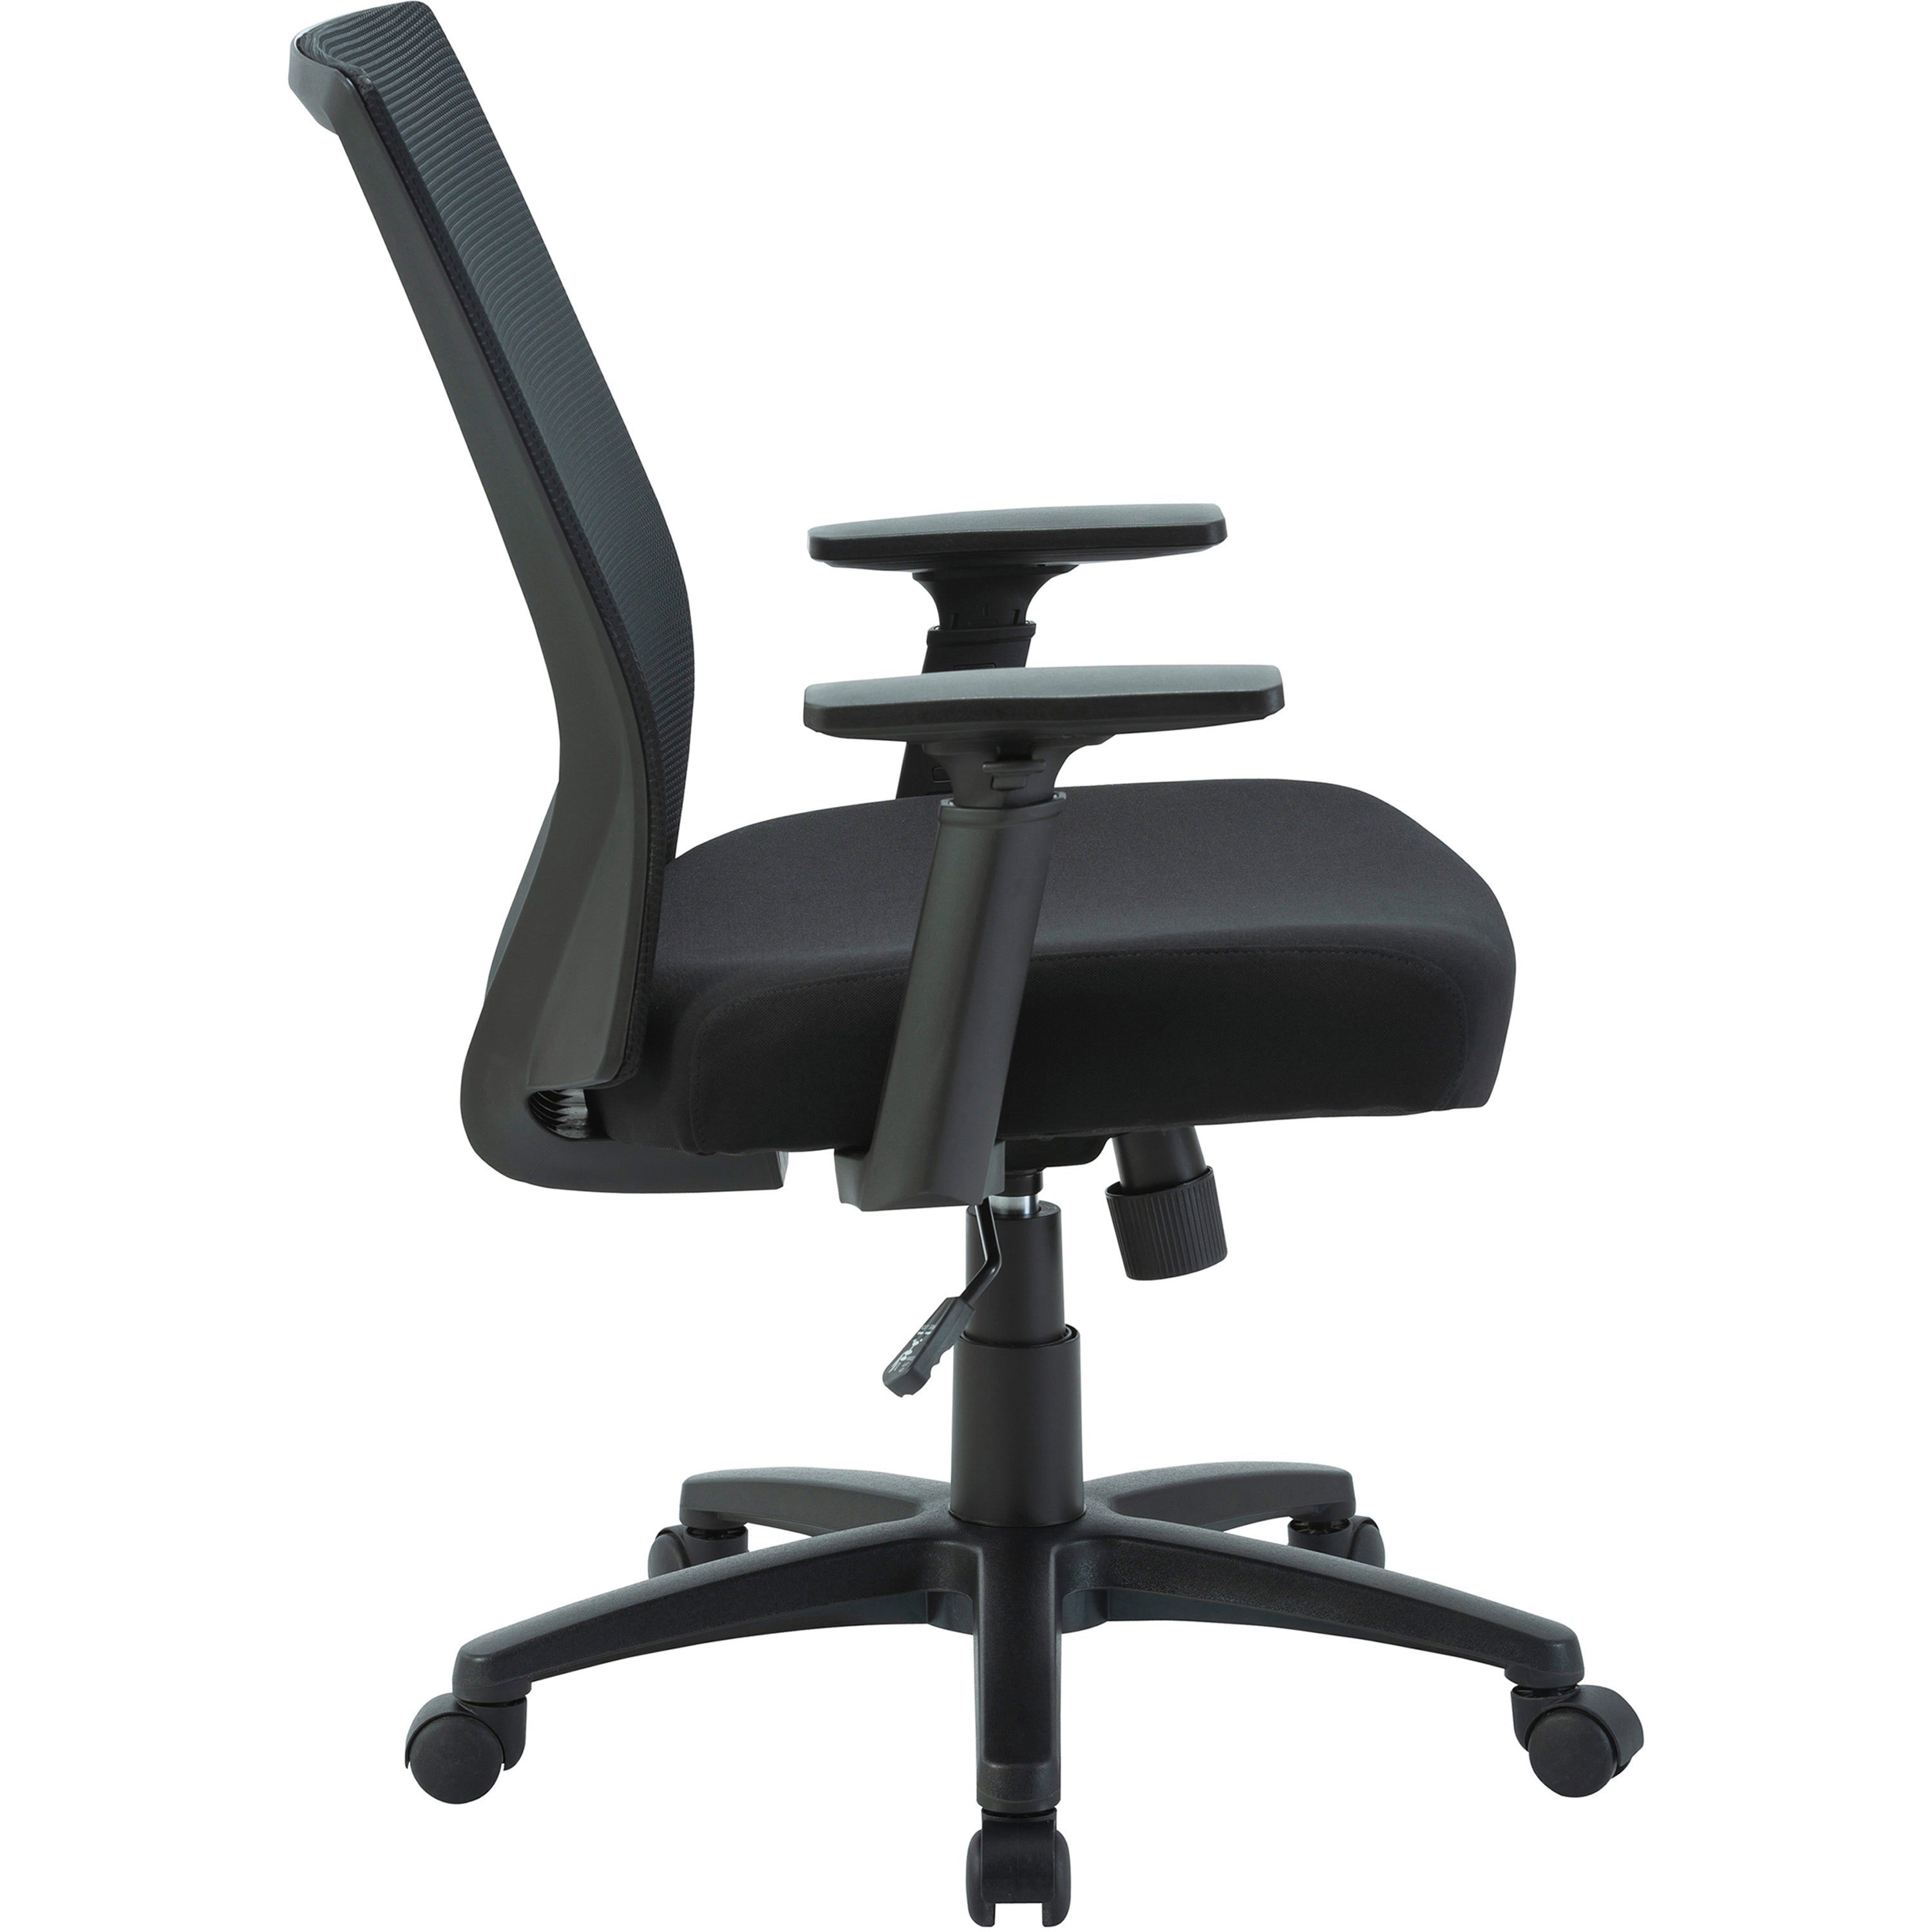 lorell-soho-mesh-mid-back-task-chair-gray-fabric-seat-gray-fabric-back-mid-back-5-star-base-black-armrest-1-each_llr41840 - 6